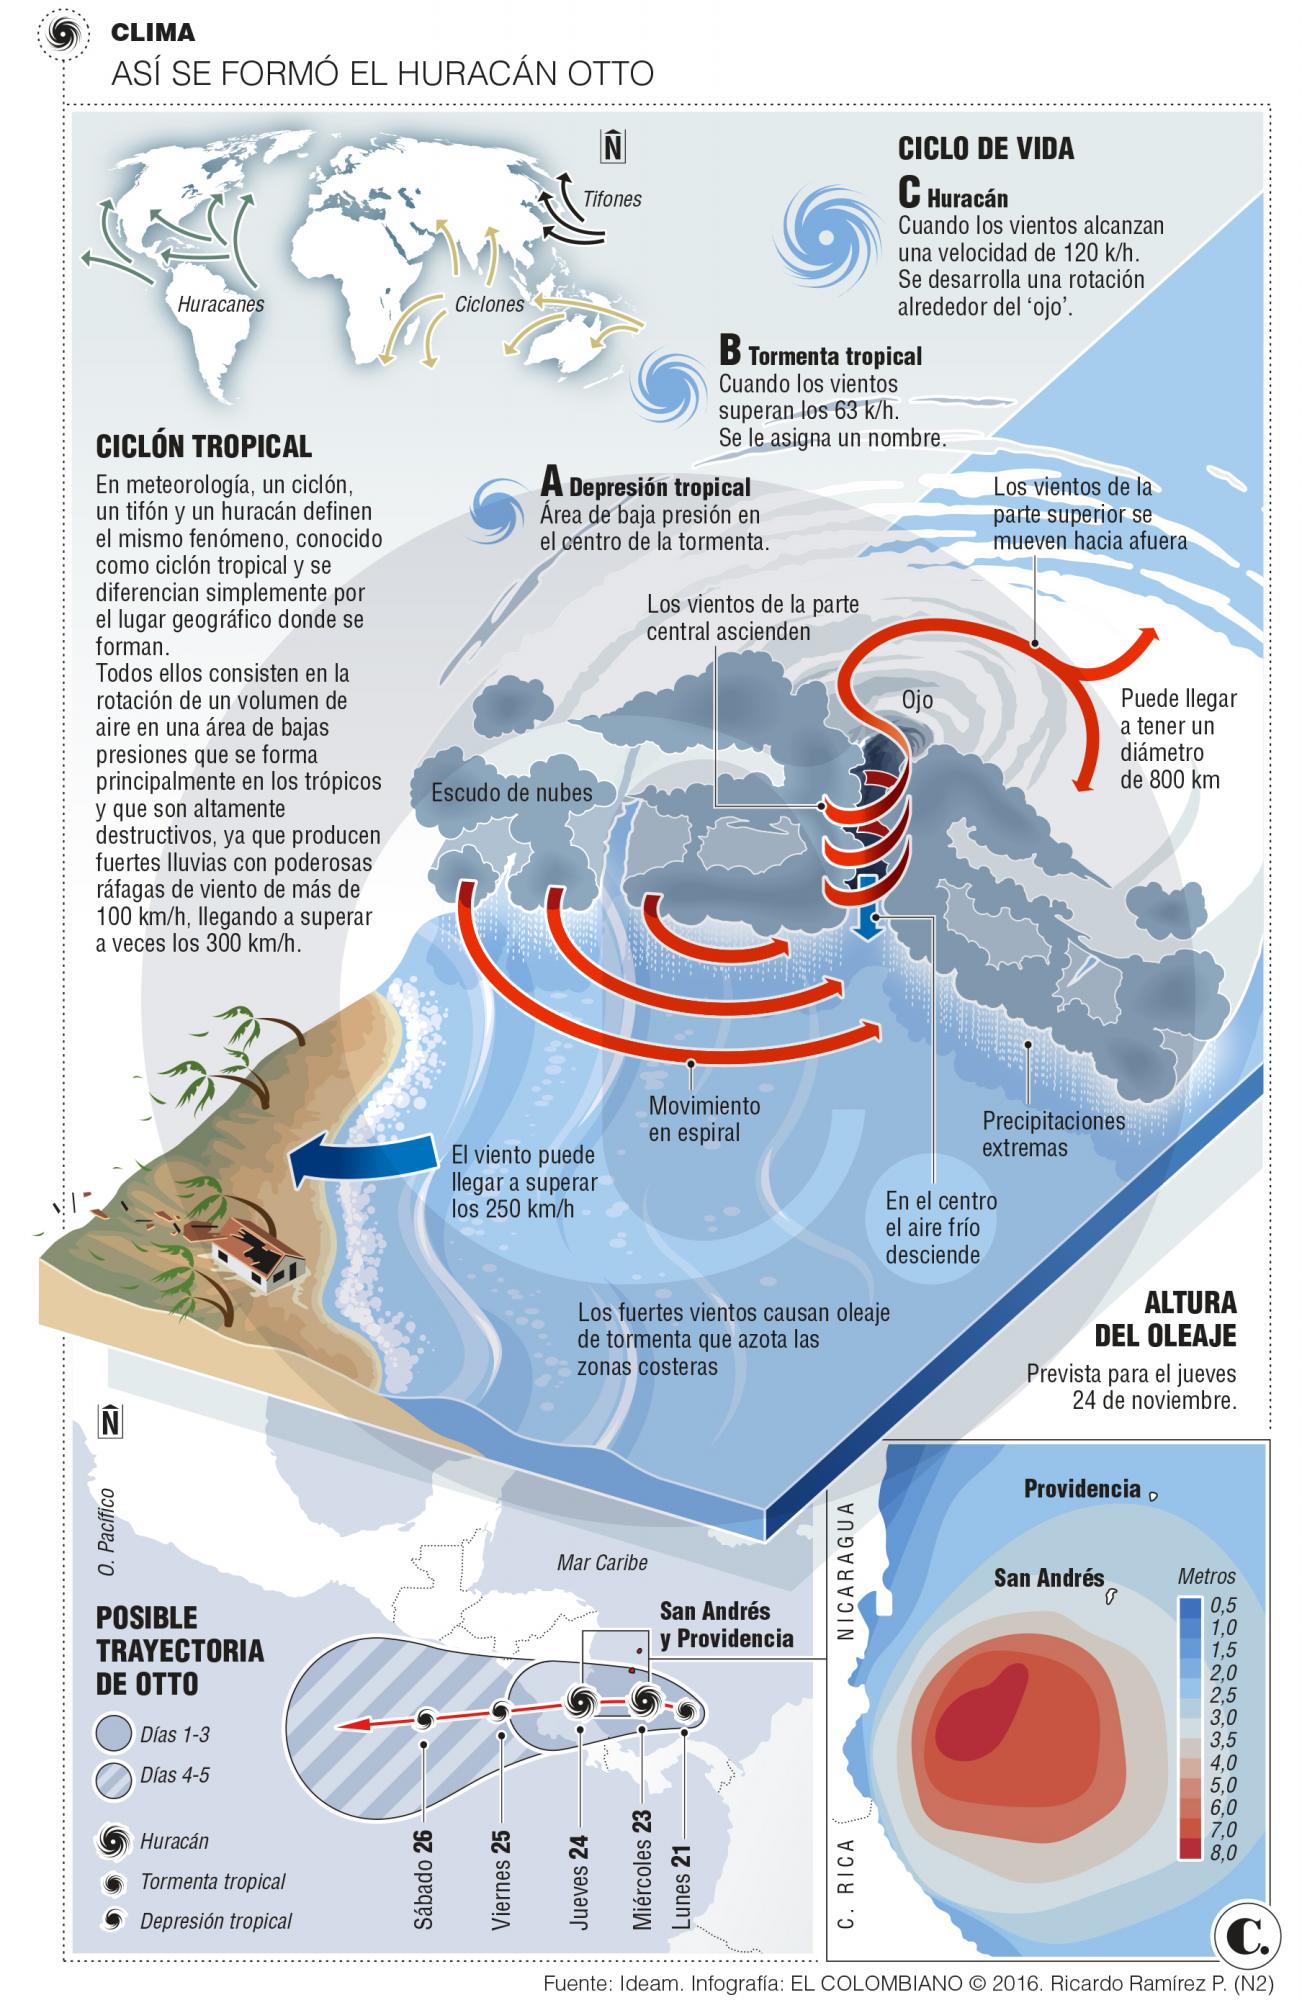 San Andrés prepara refugios ante la llegada del huracán Otto 